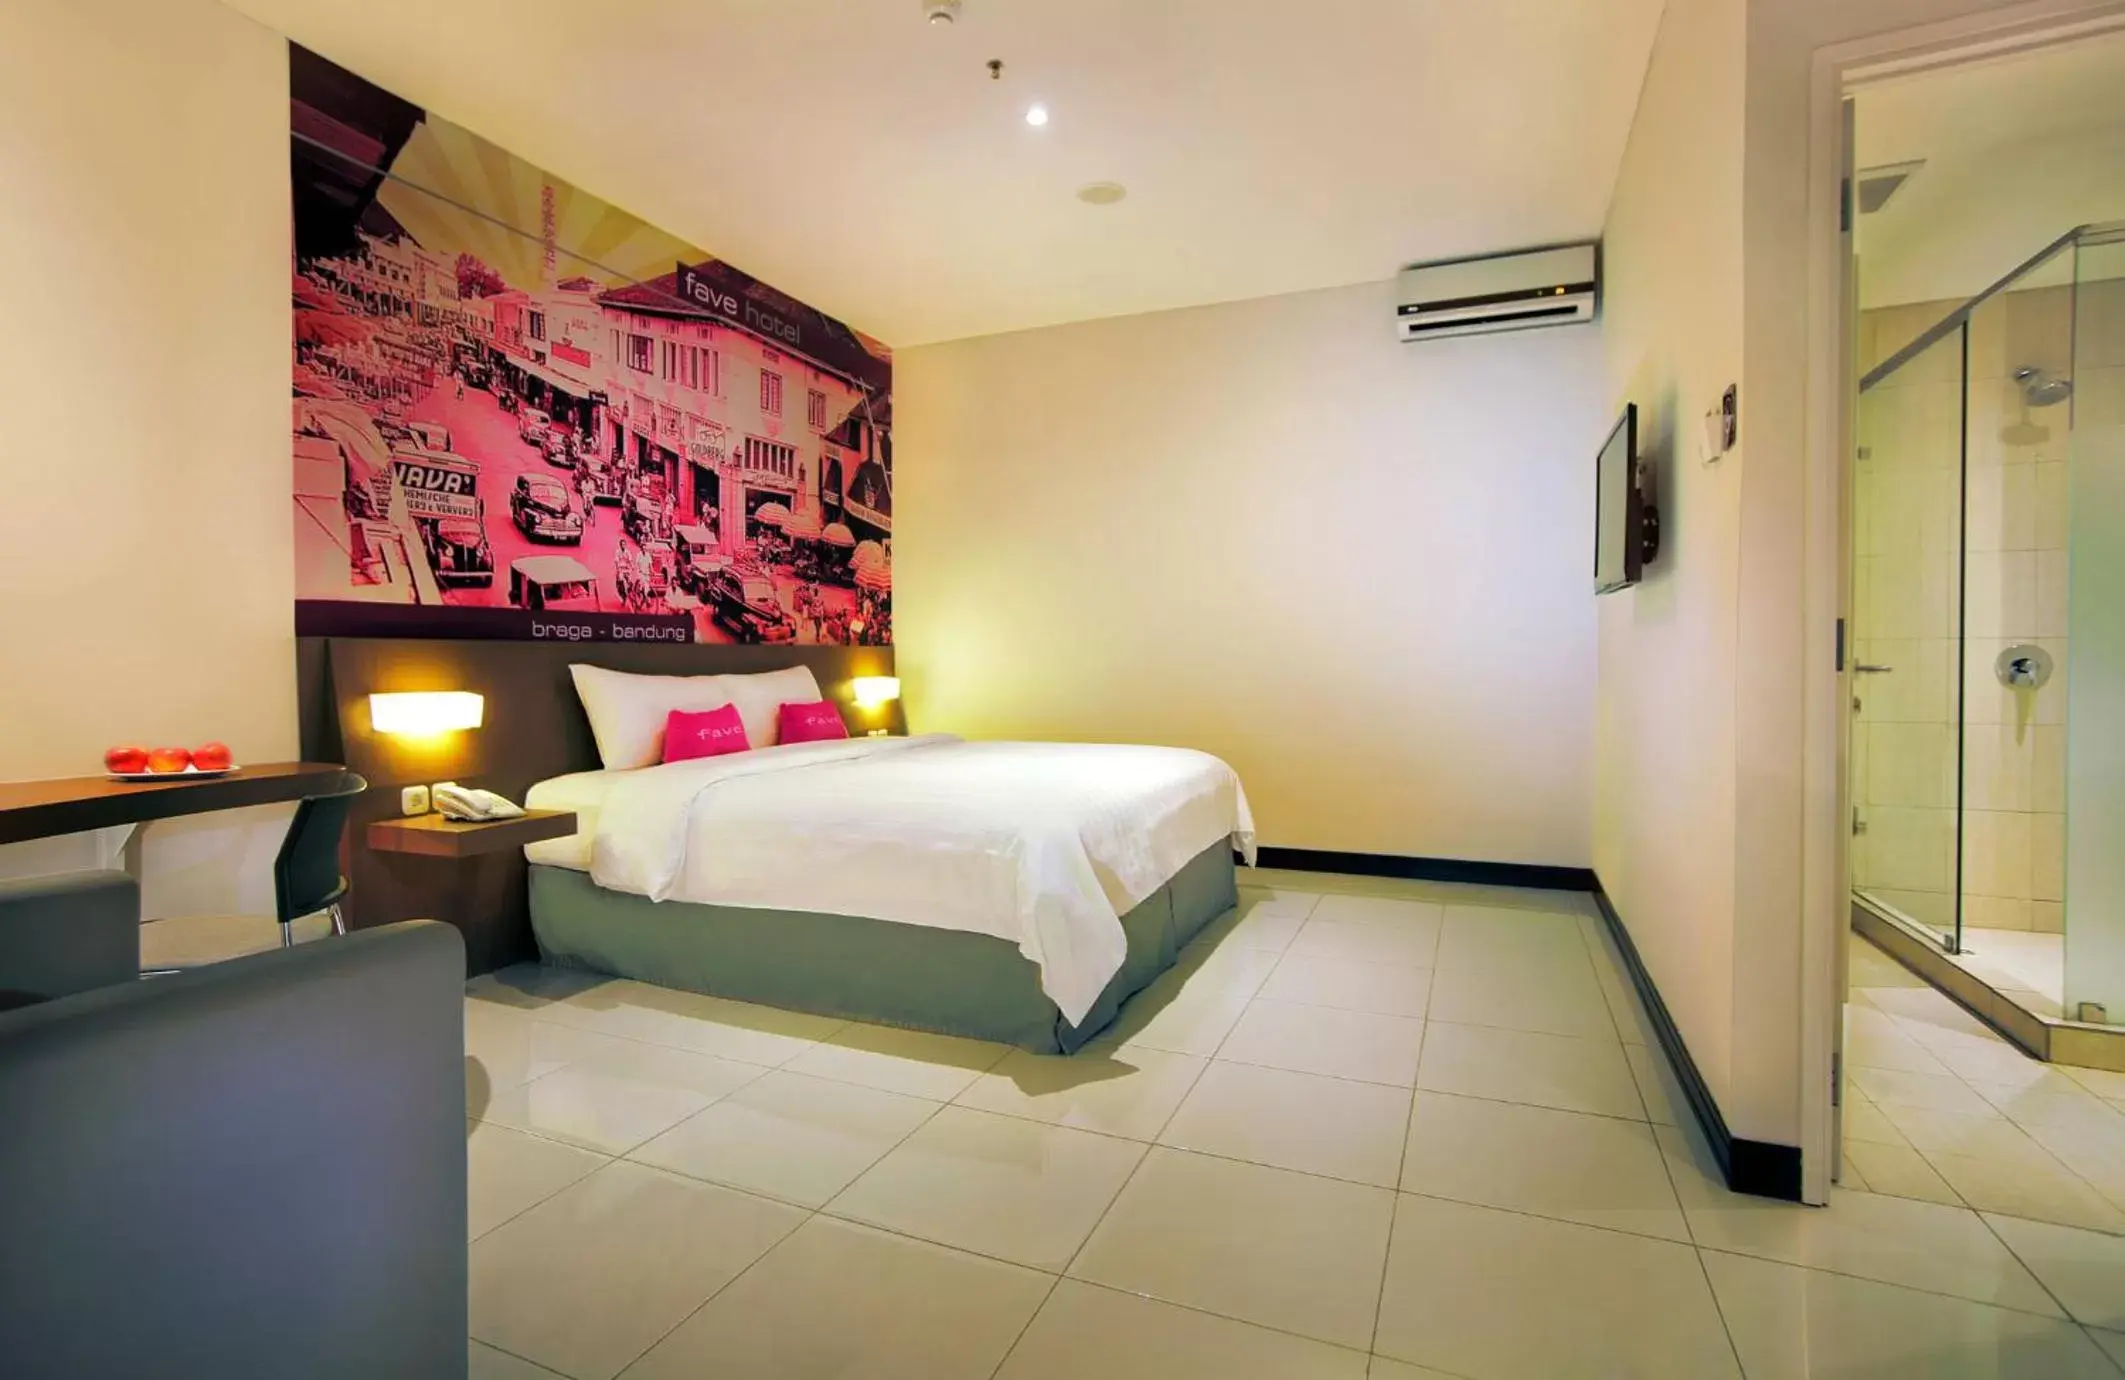 Bedroom, Bed in favehotel Braga